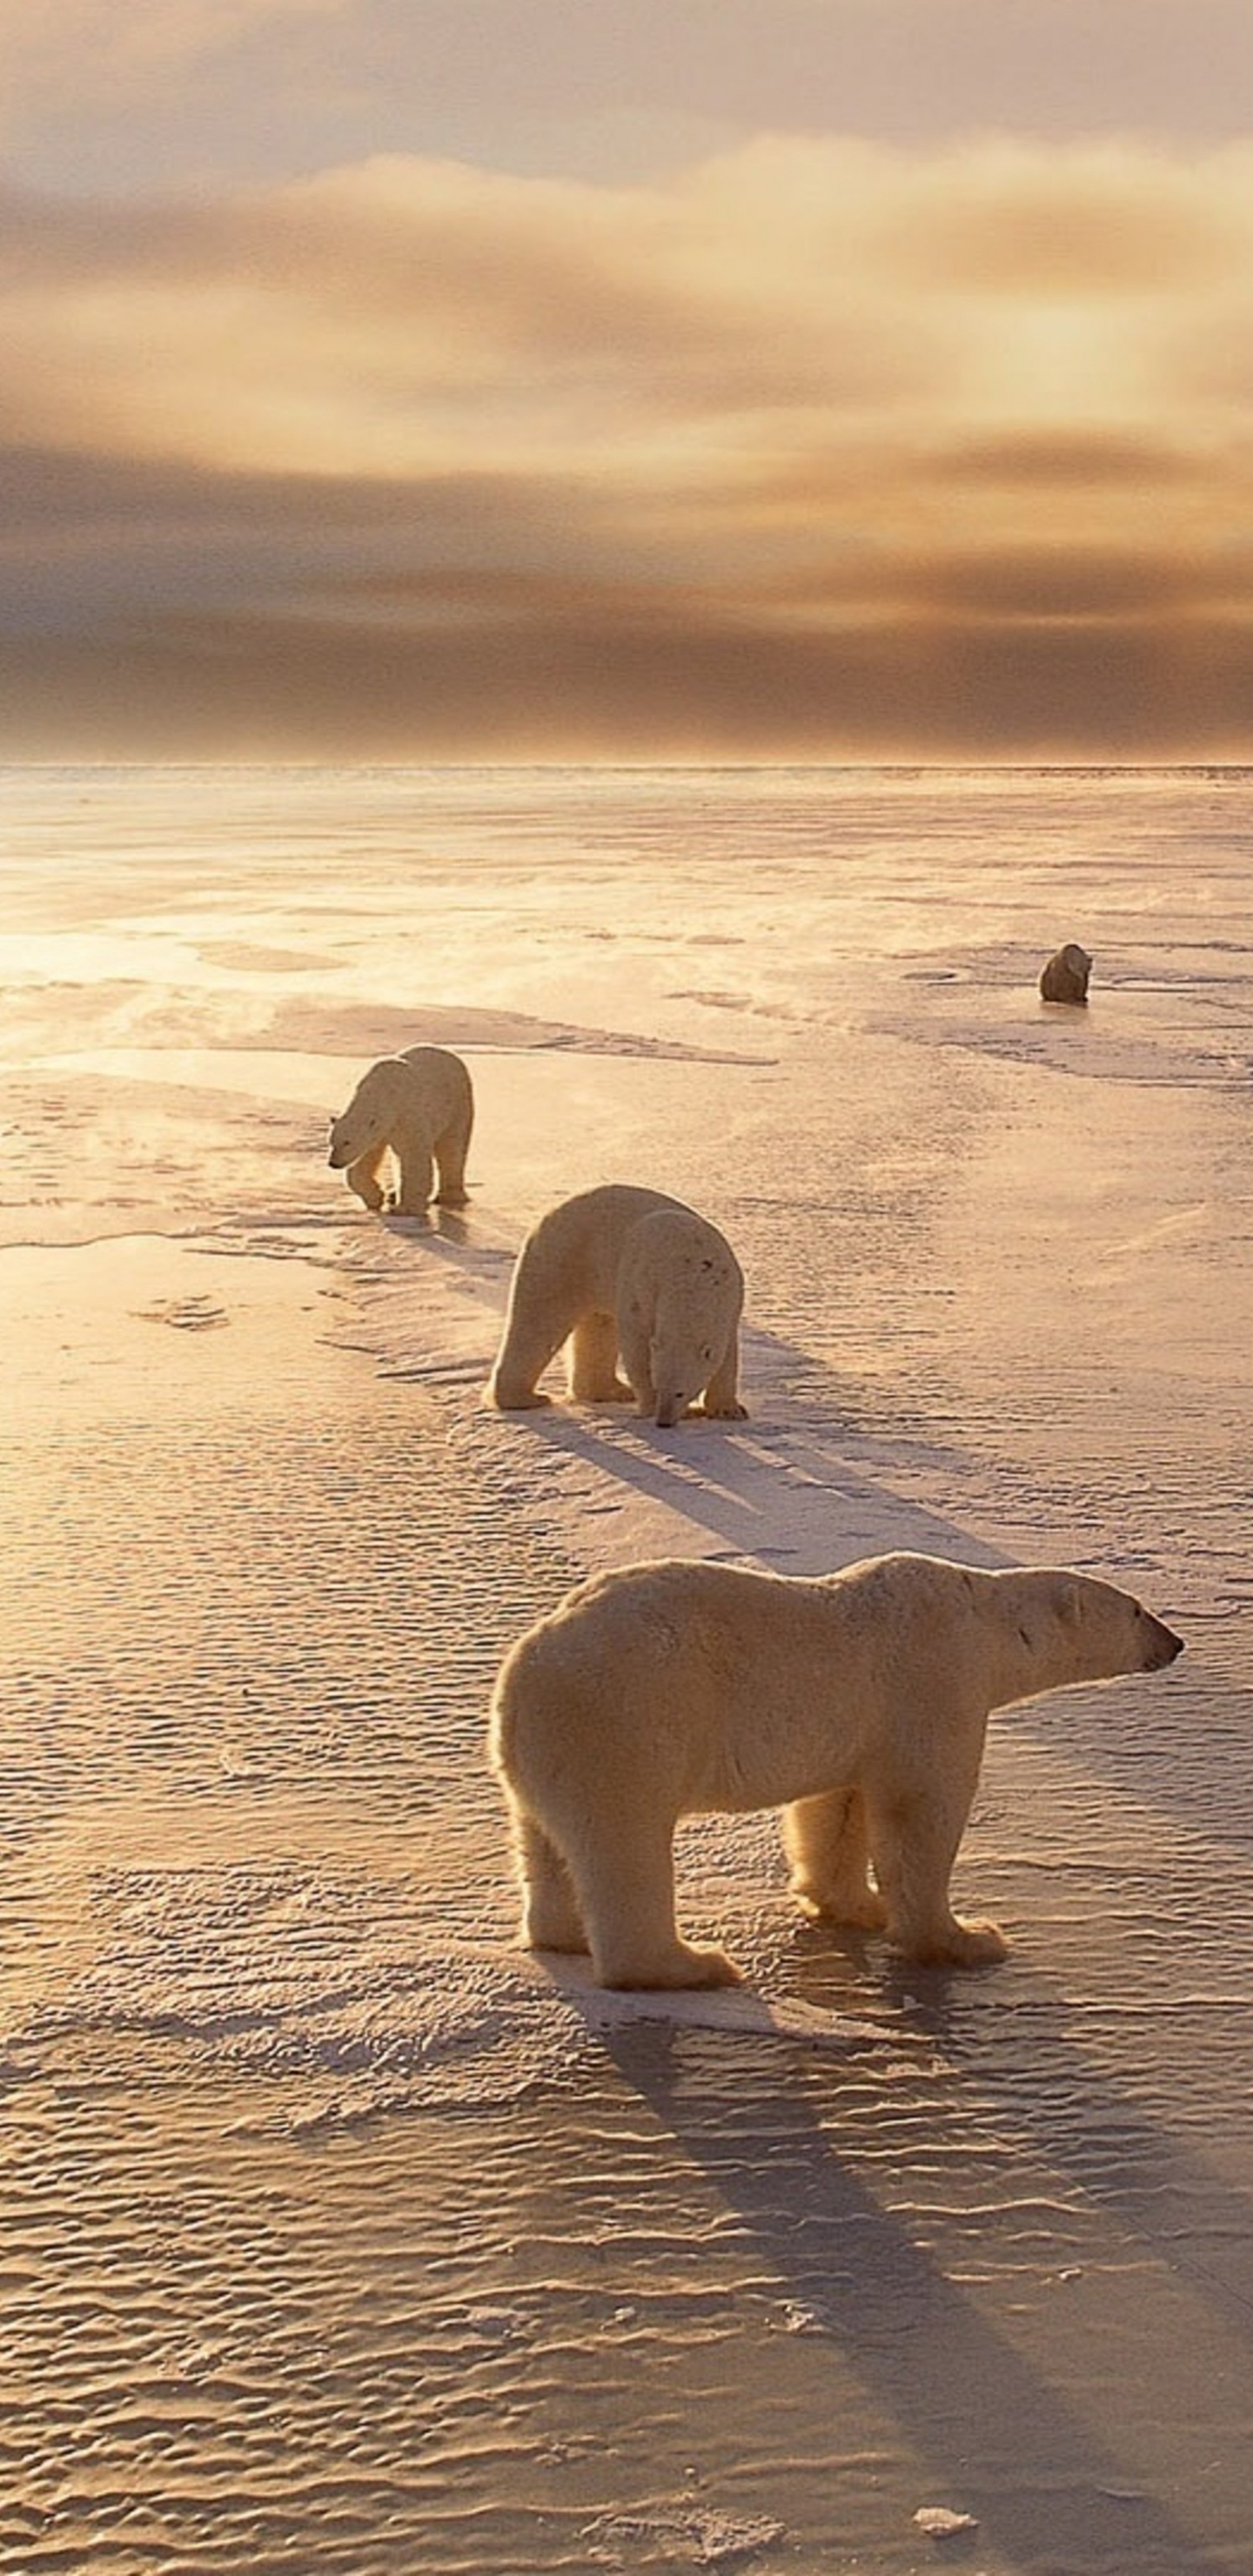 Weißer Eisbär Auf Braunem Sand Tagsüber. Wallpaper in 1440x2960 Resolution